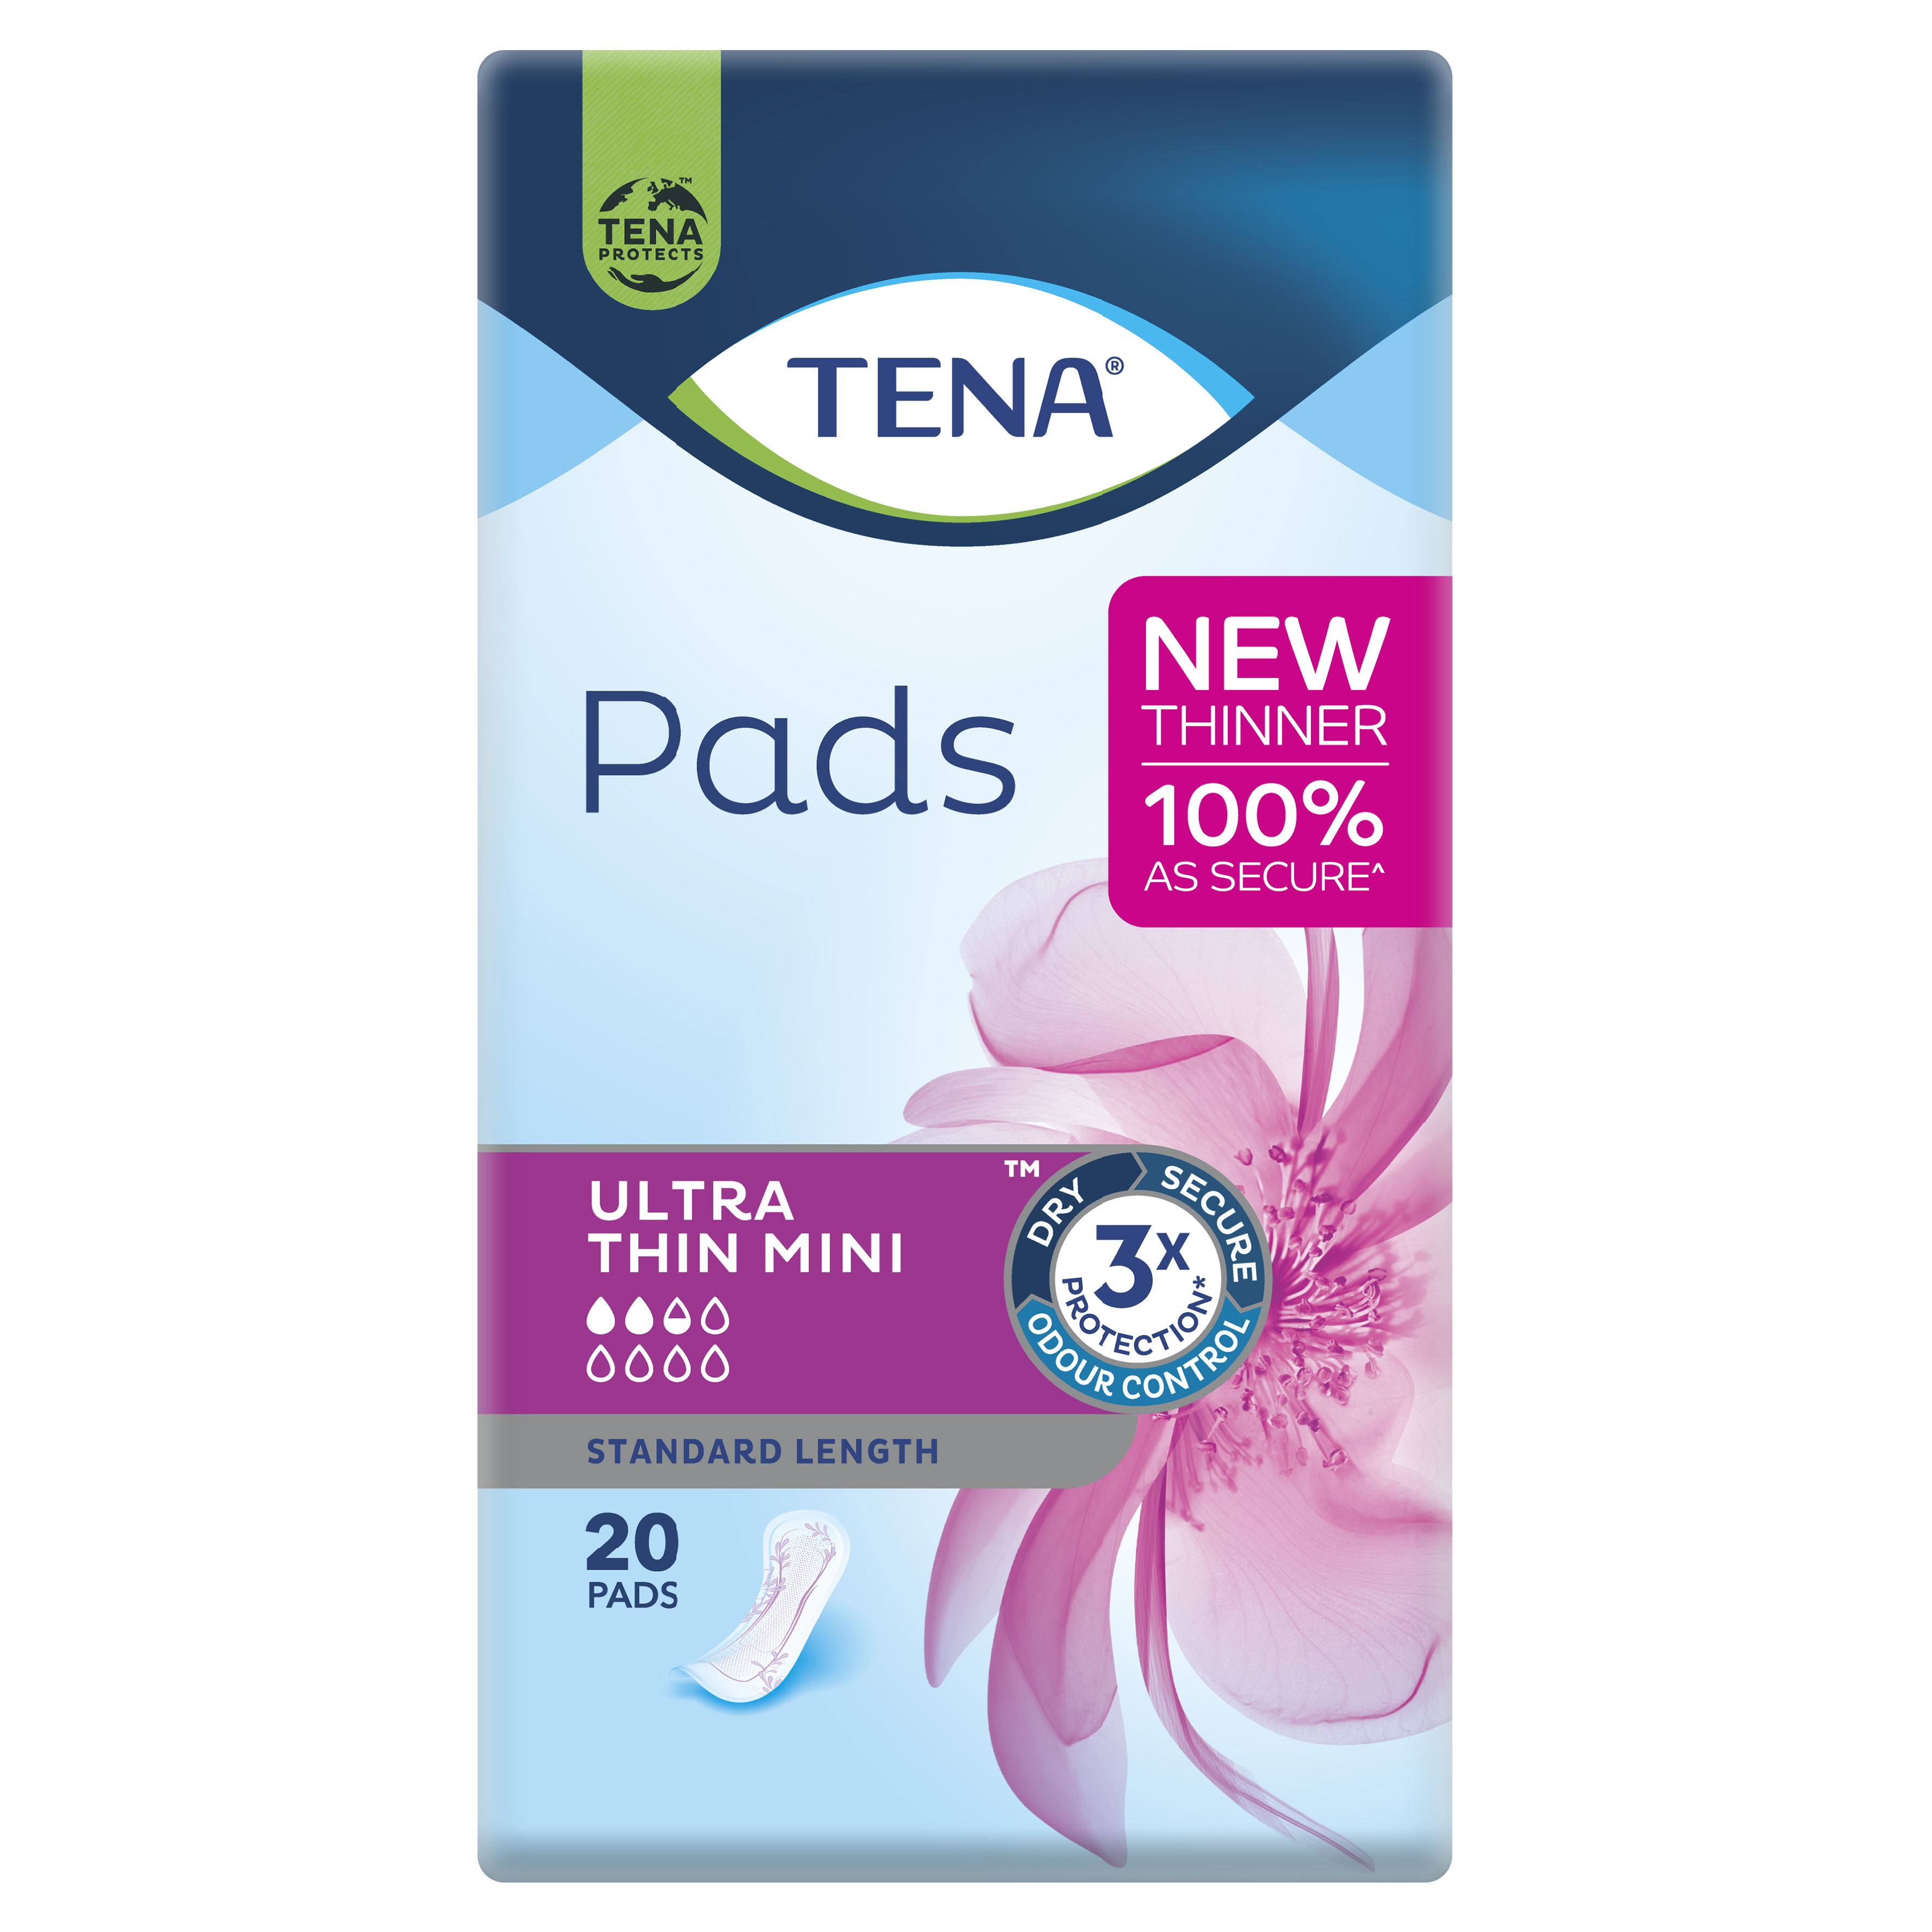 TENA Pads Ultra Thin Mini 20s